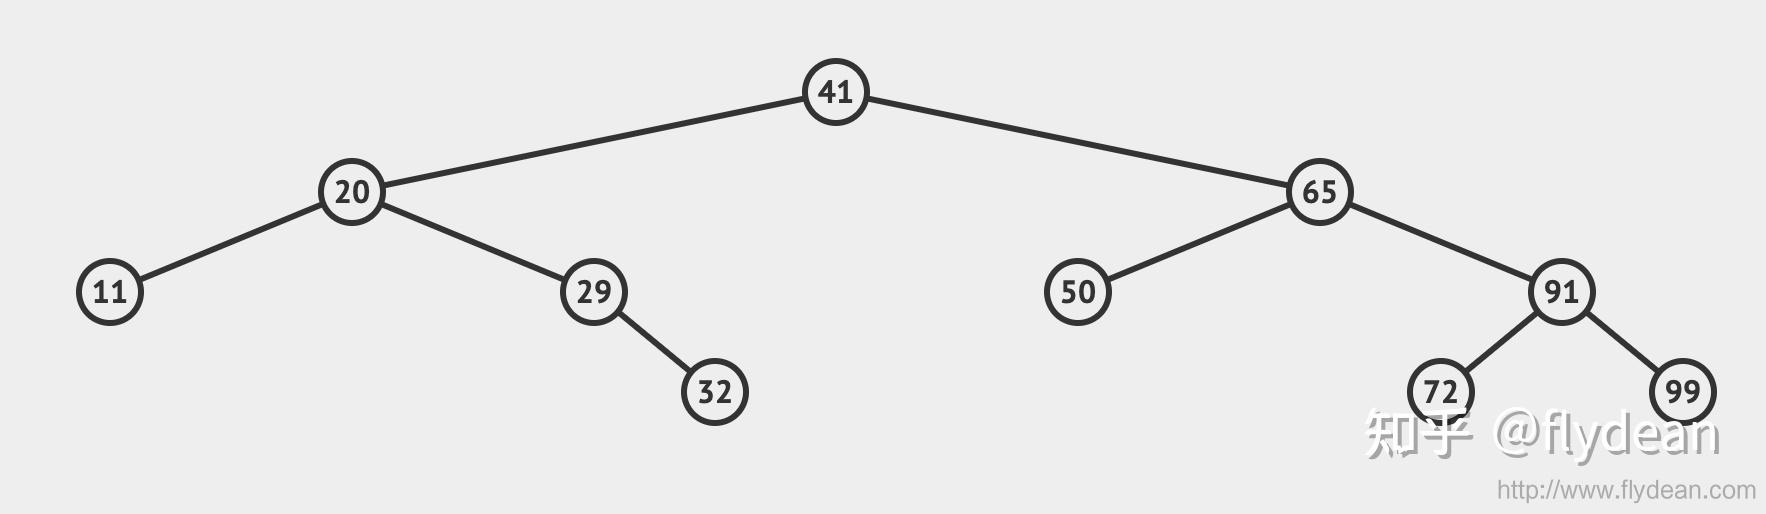 二叉排序树的基本性质有哪些_二叉排序树的基本性质有哪些